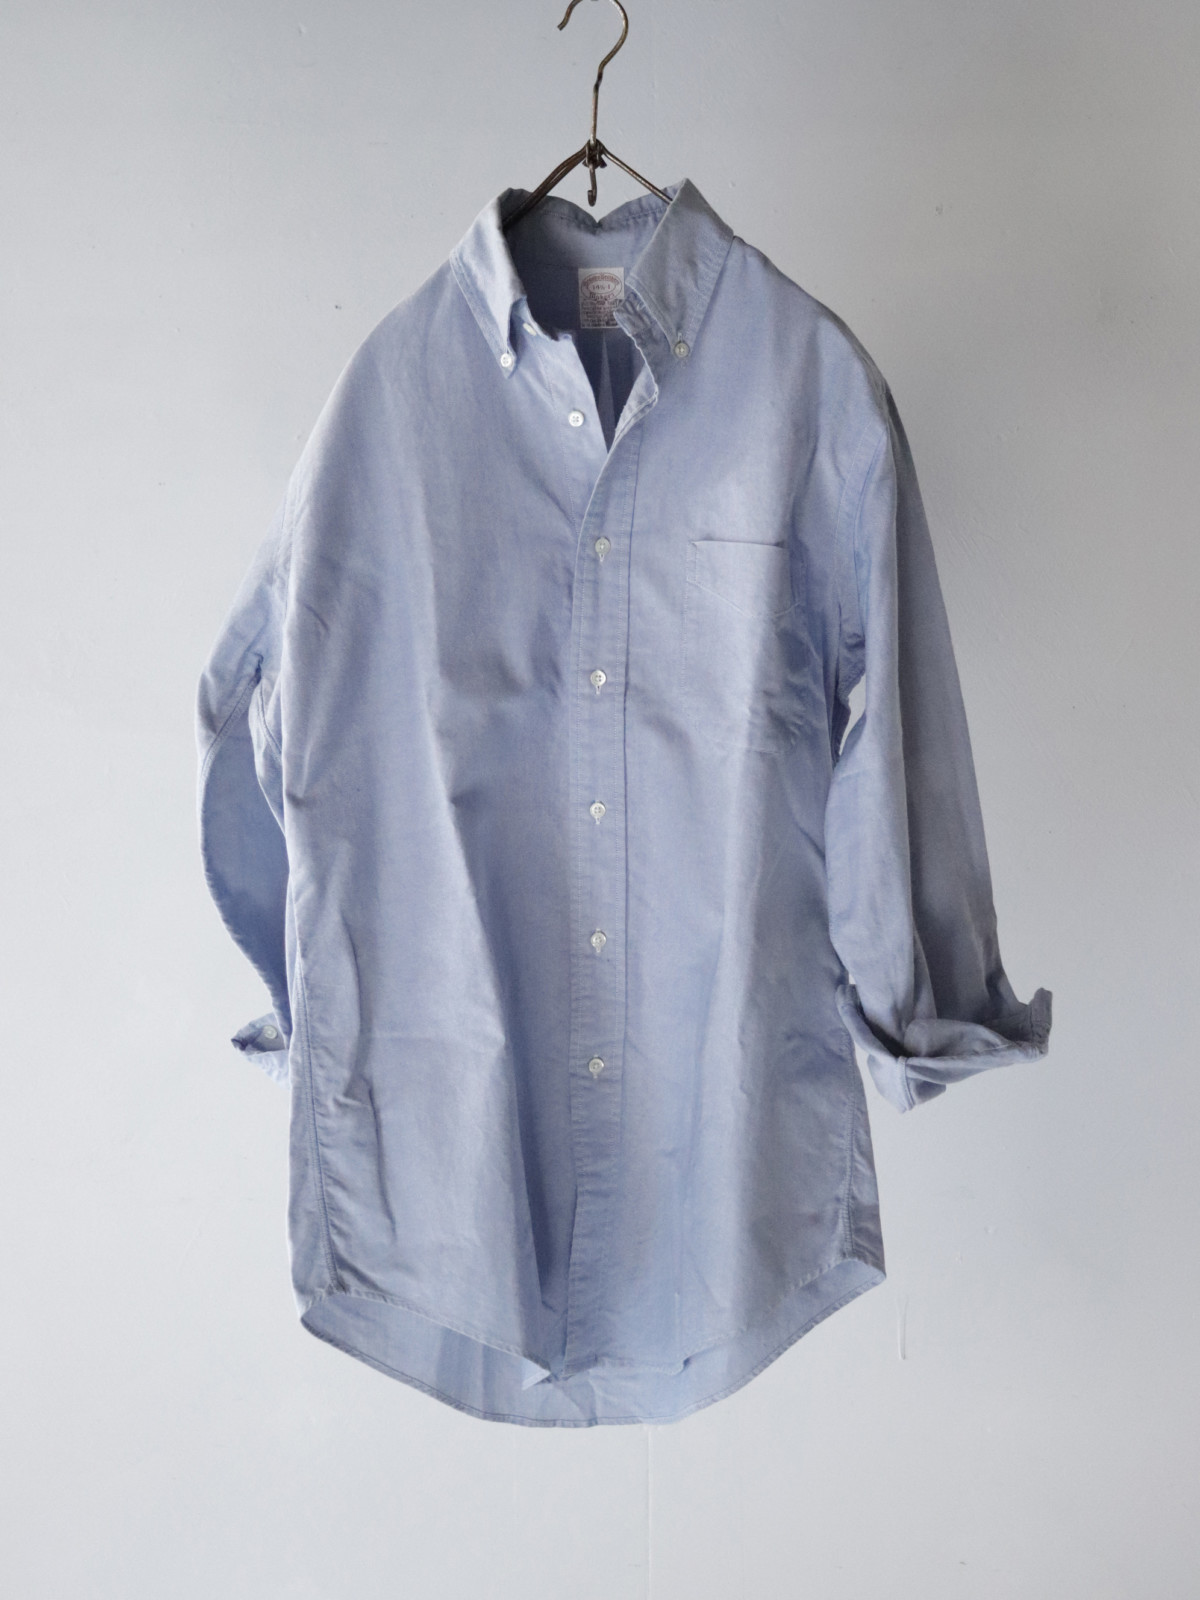 Brooks Brothers,USA,cotton shirts,